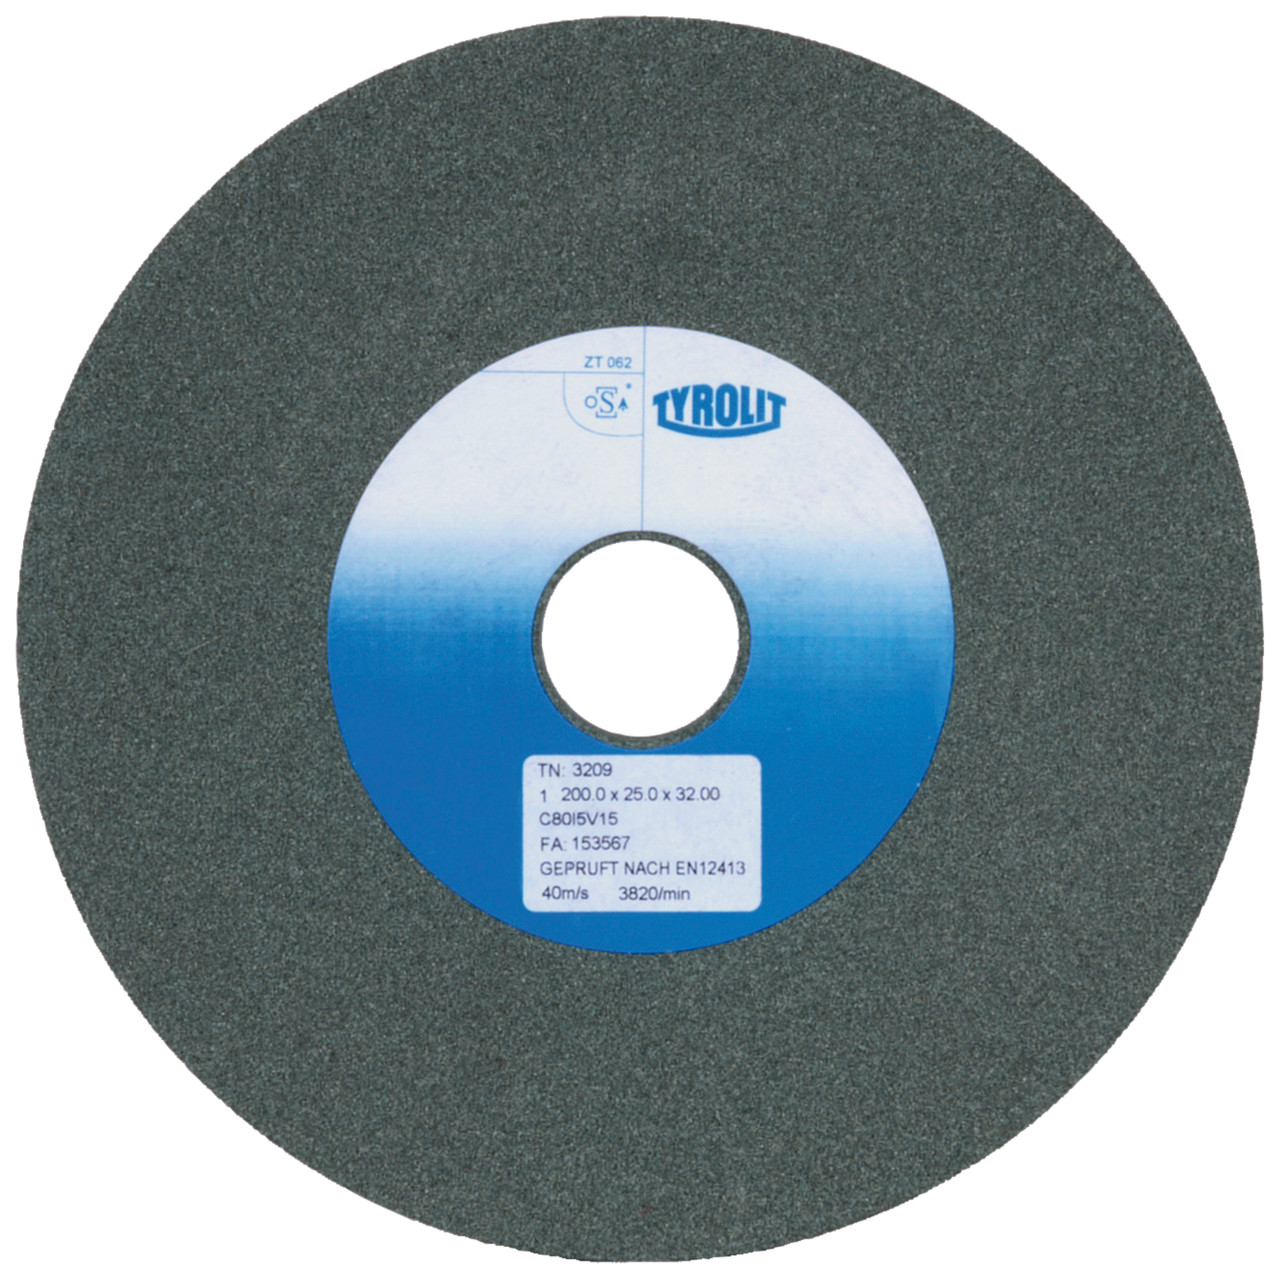 TYROLIT discos abrasivos cerámicos convencionales DxDxH 175x25x32 Para metal duro y fundición, forma: 1, Art. 2956